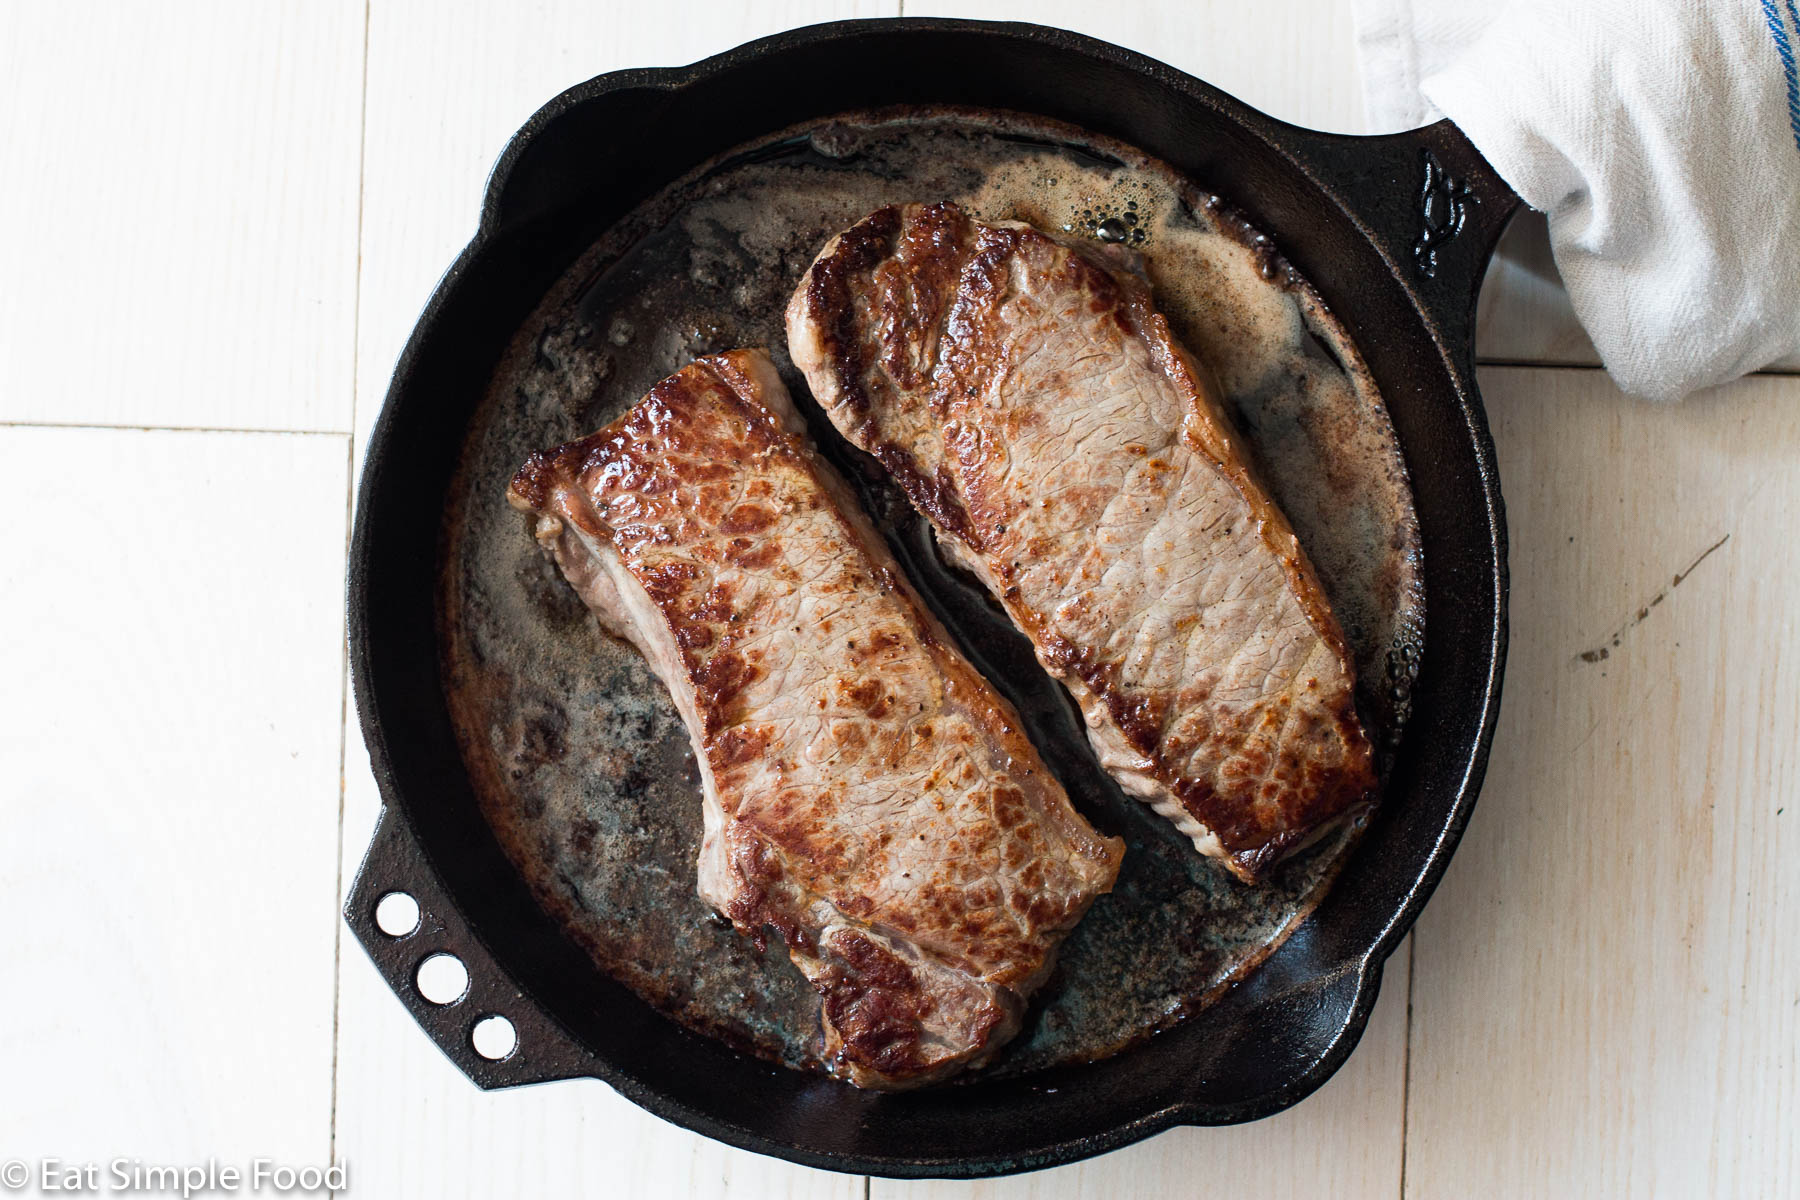 Pan-Seared Strip Steaks Recipe